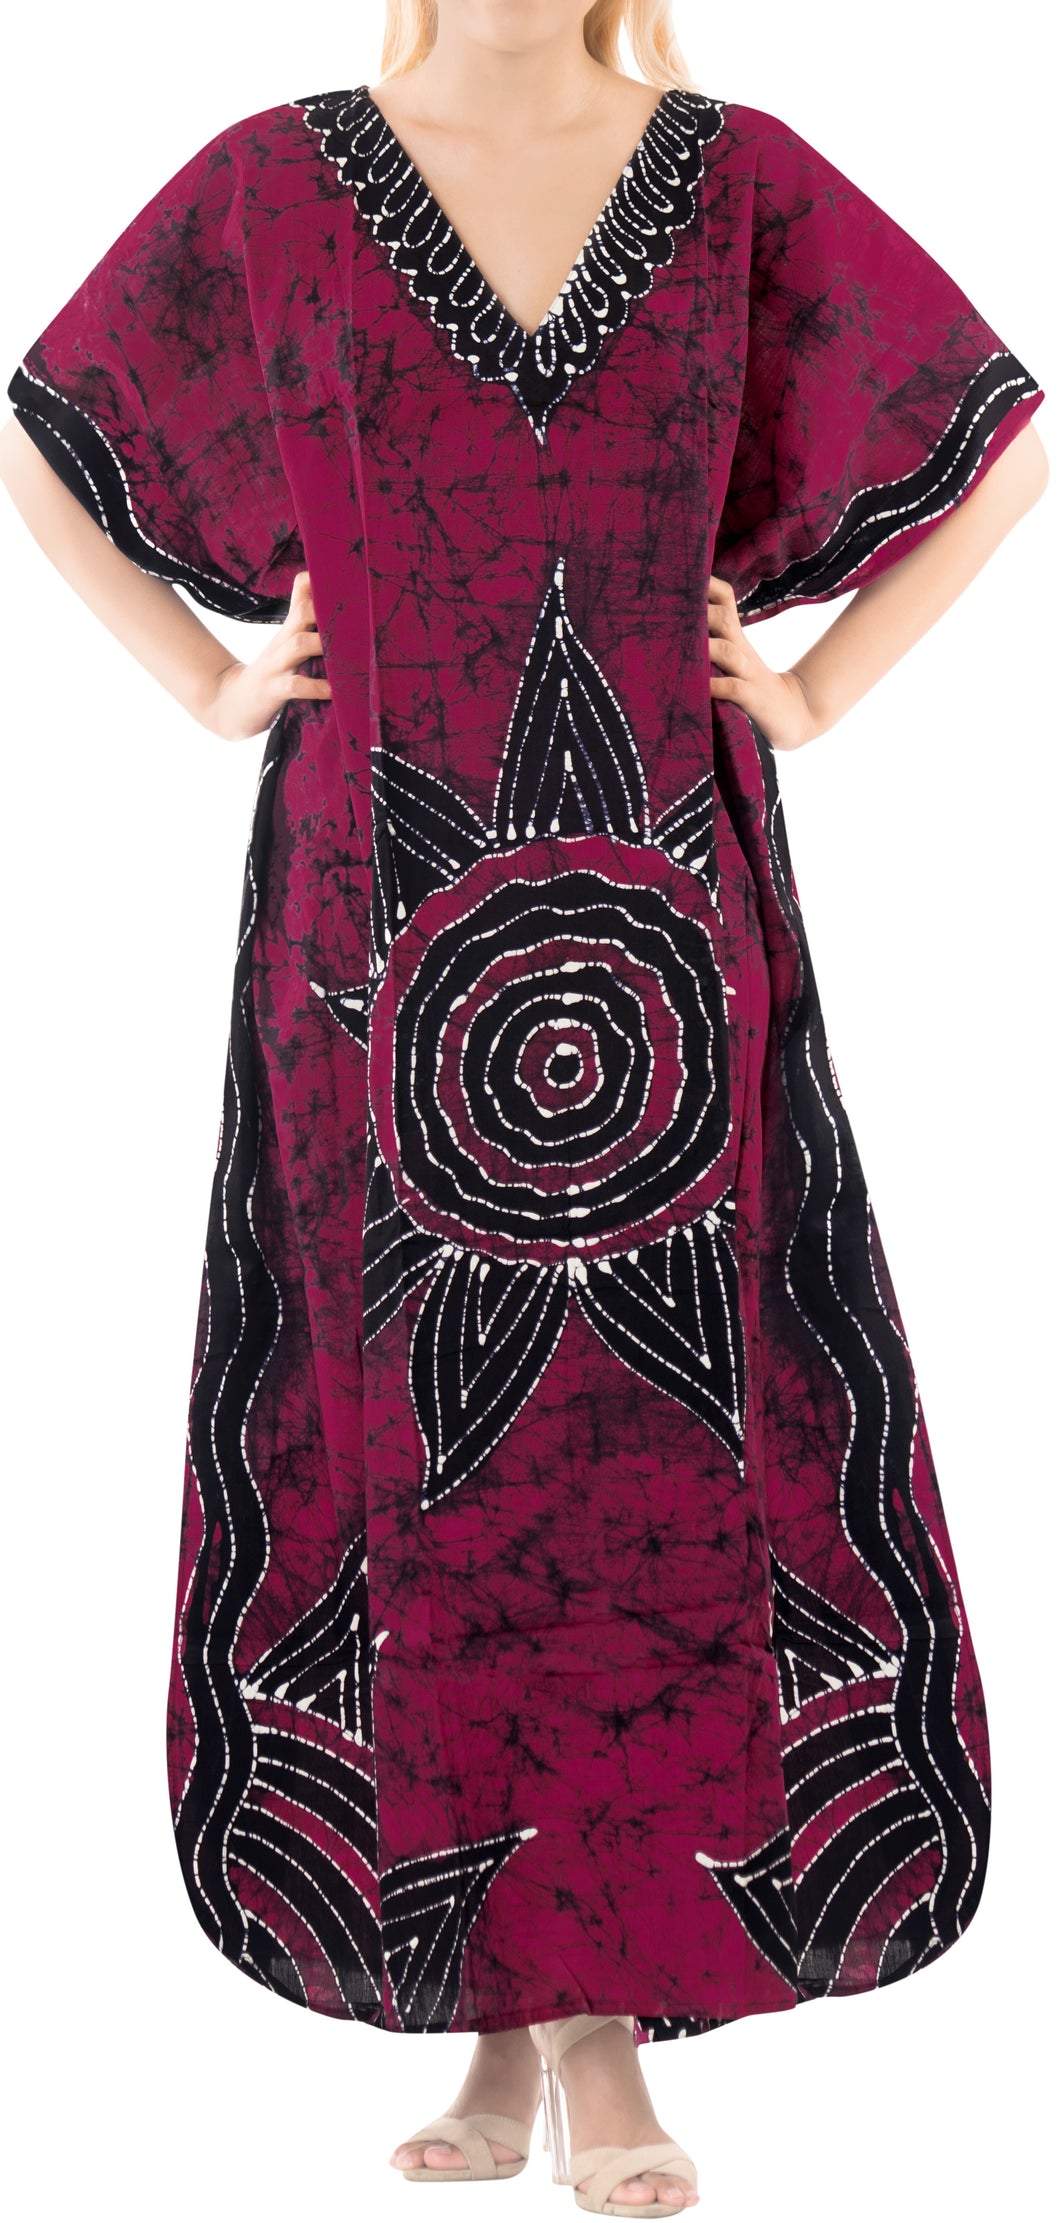 LA LEELA Cotton Batik Printed Women's Kaftan Kimono Summer Beachwear Cover up Dress OSFM 14-18W [L- 2X] Pink_Q338